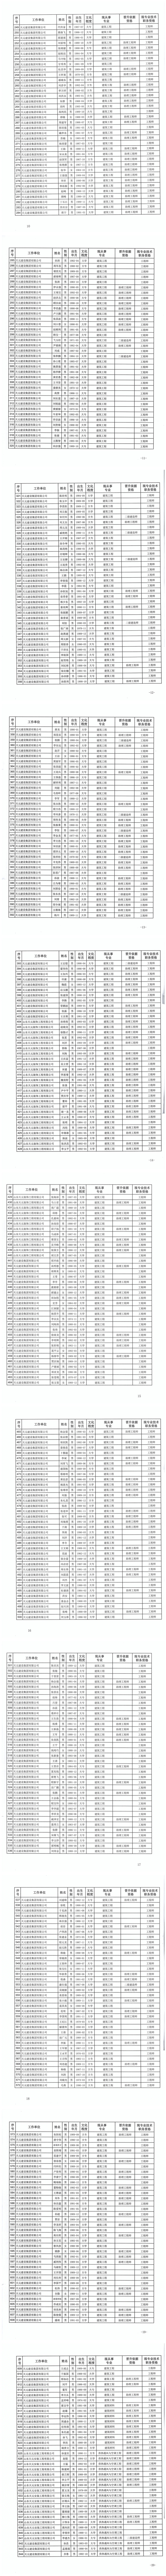 关于公布尹传玉等773名同志建设工程技术中级职务任职资格的通知(图2)